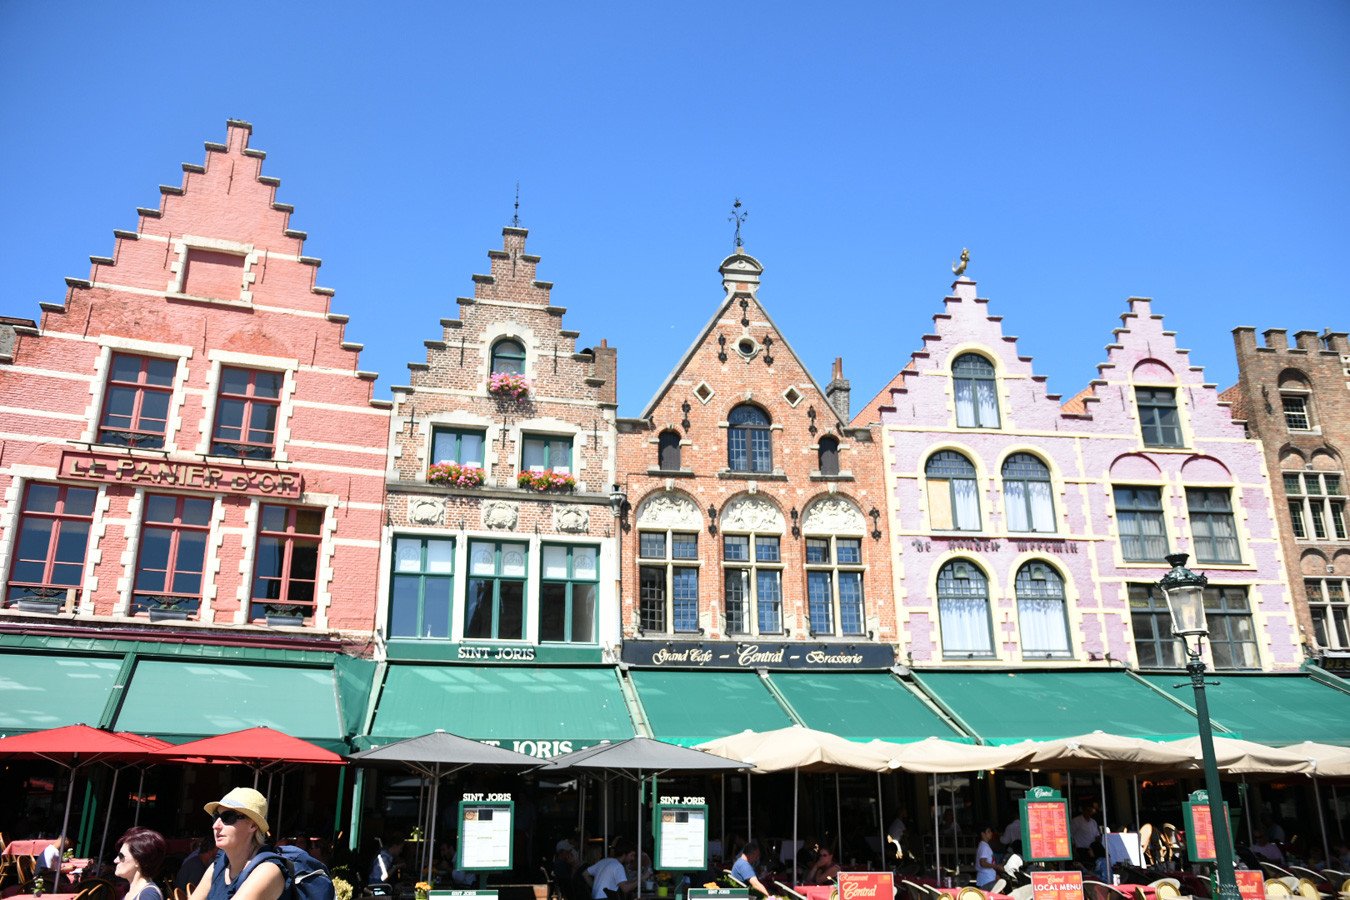 Visiting Bruges, Belgium